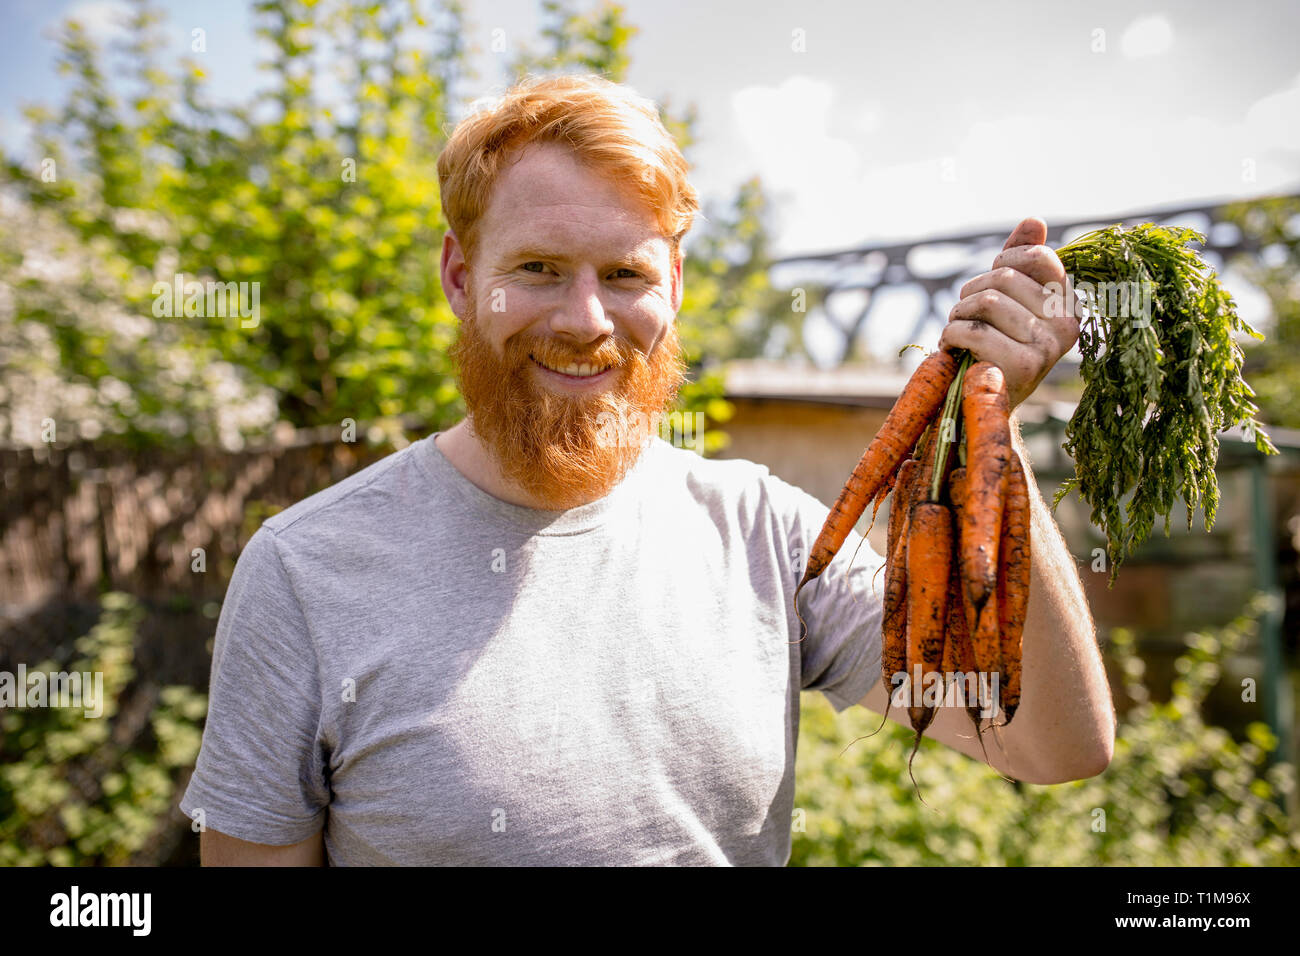 Portrait lächelnder Mann mit Bart, der Karotten im sonnigen Gemüsegarten erntet Stockfoto